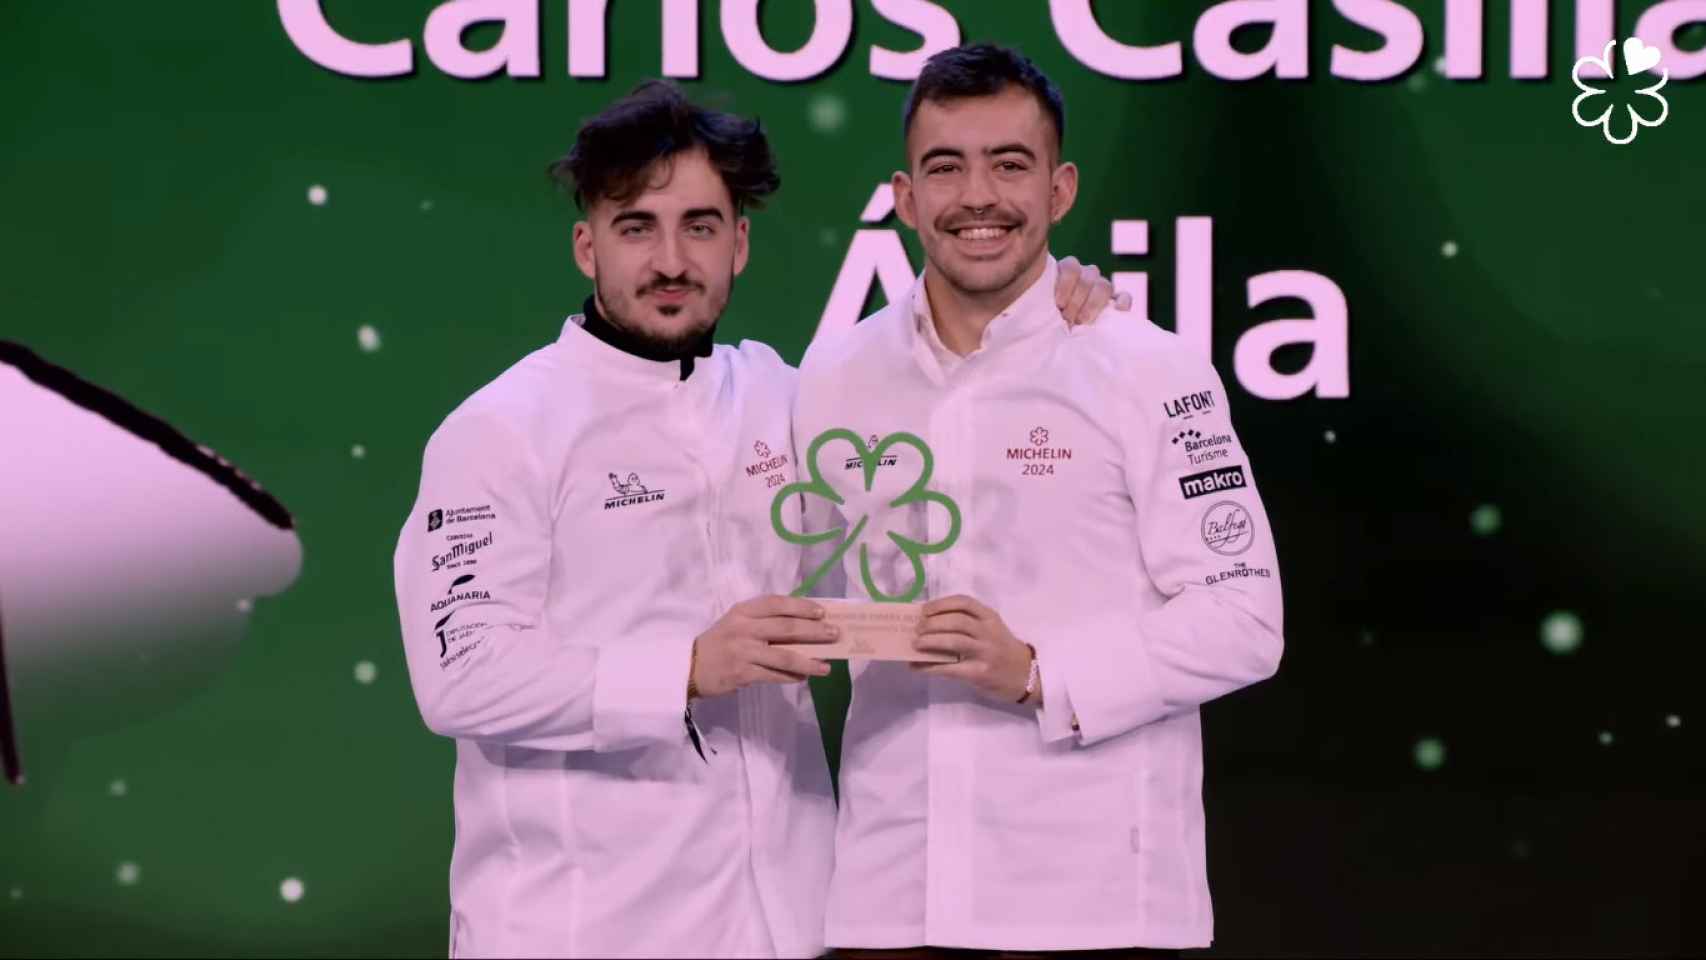 Carlos Casillas y Jaime Mondéjar reciben su estrella verde